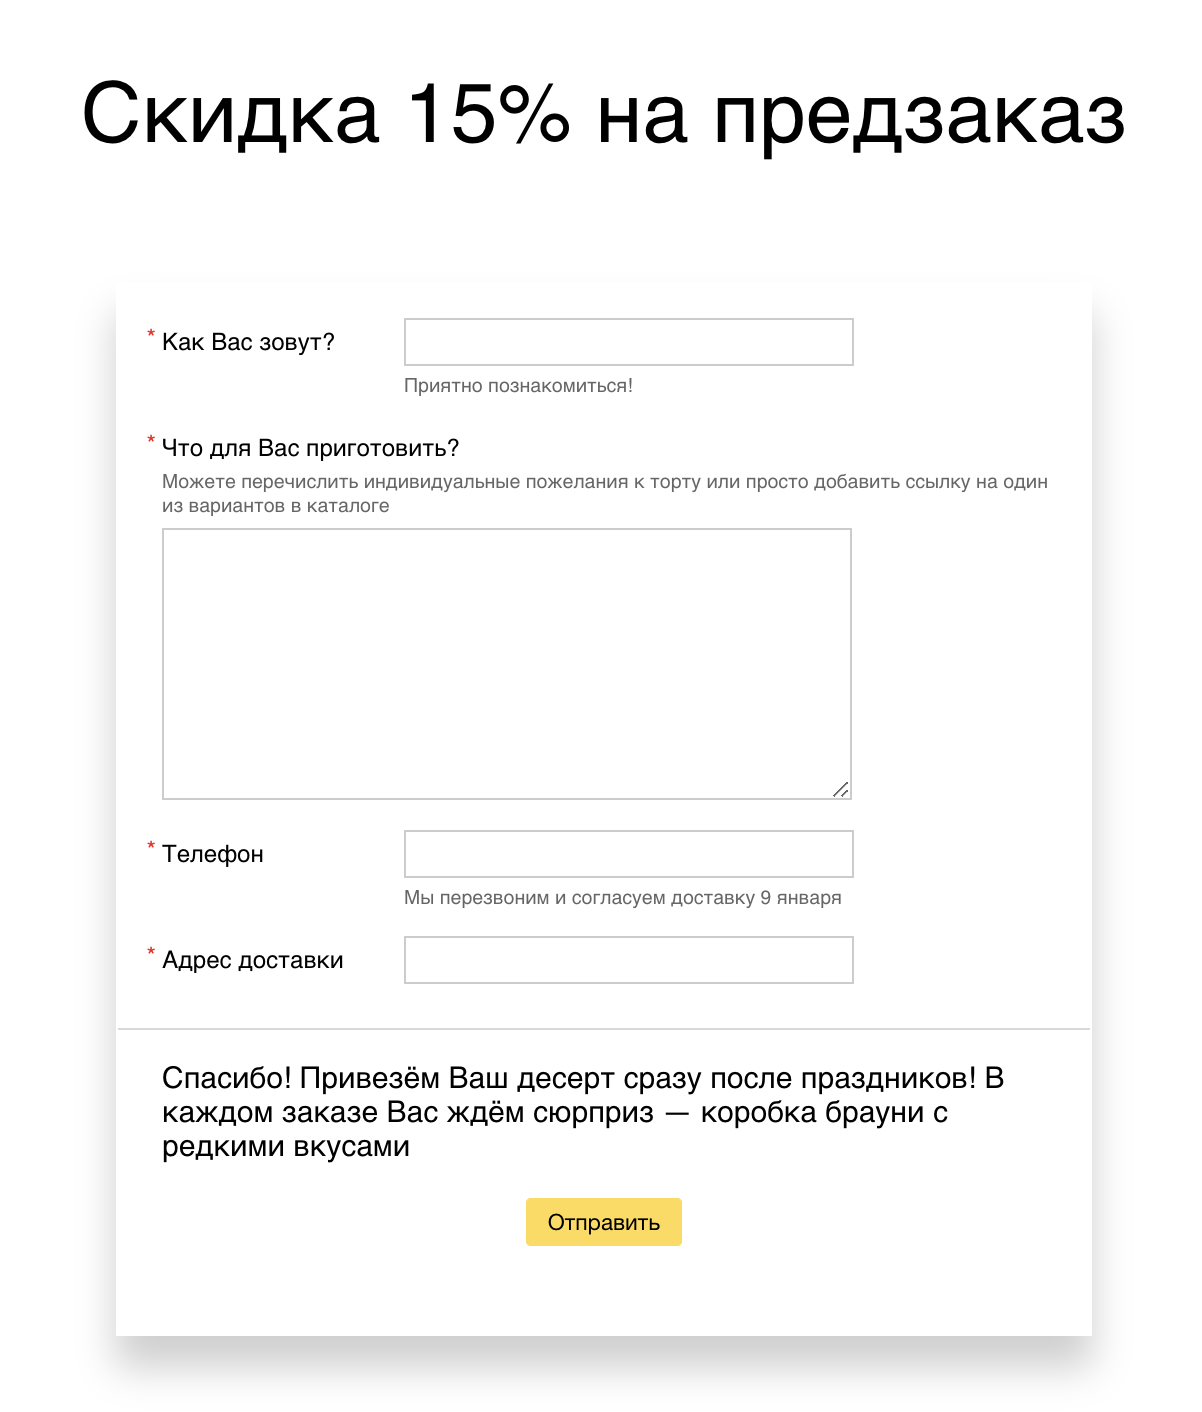 Яндекс рассказал, как не упустить аудиторию в новогодние праздники